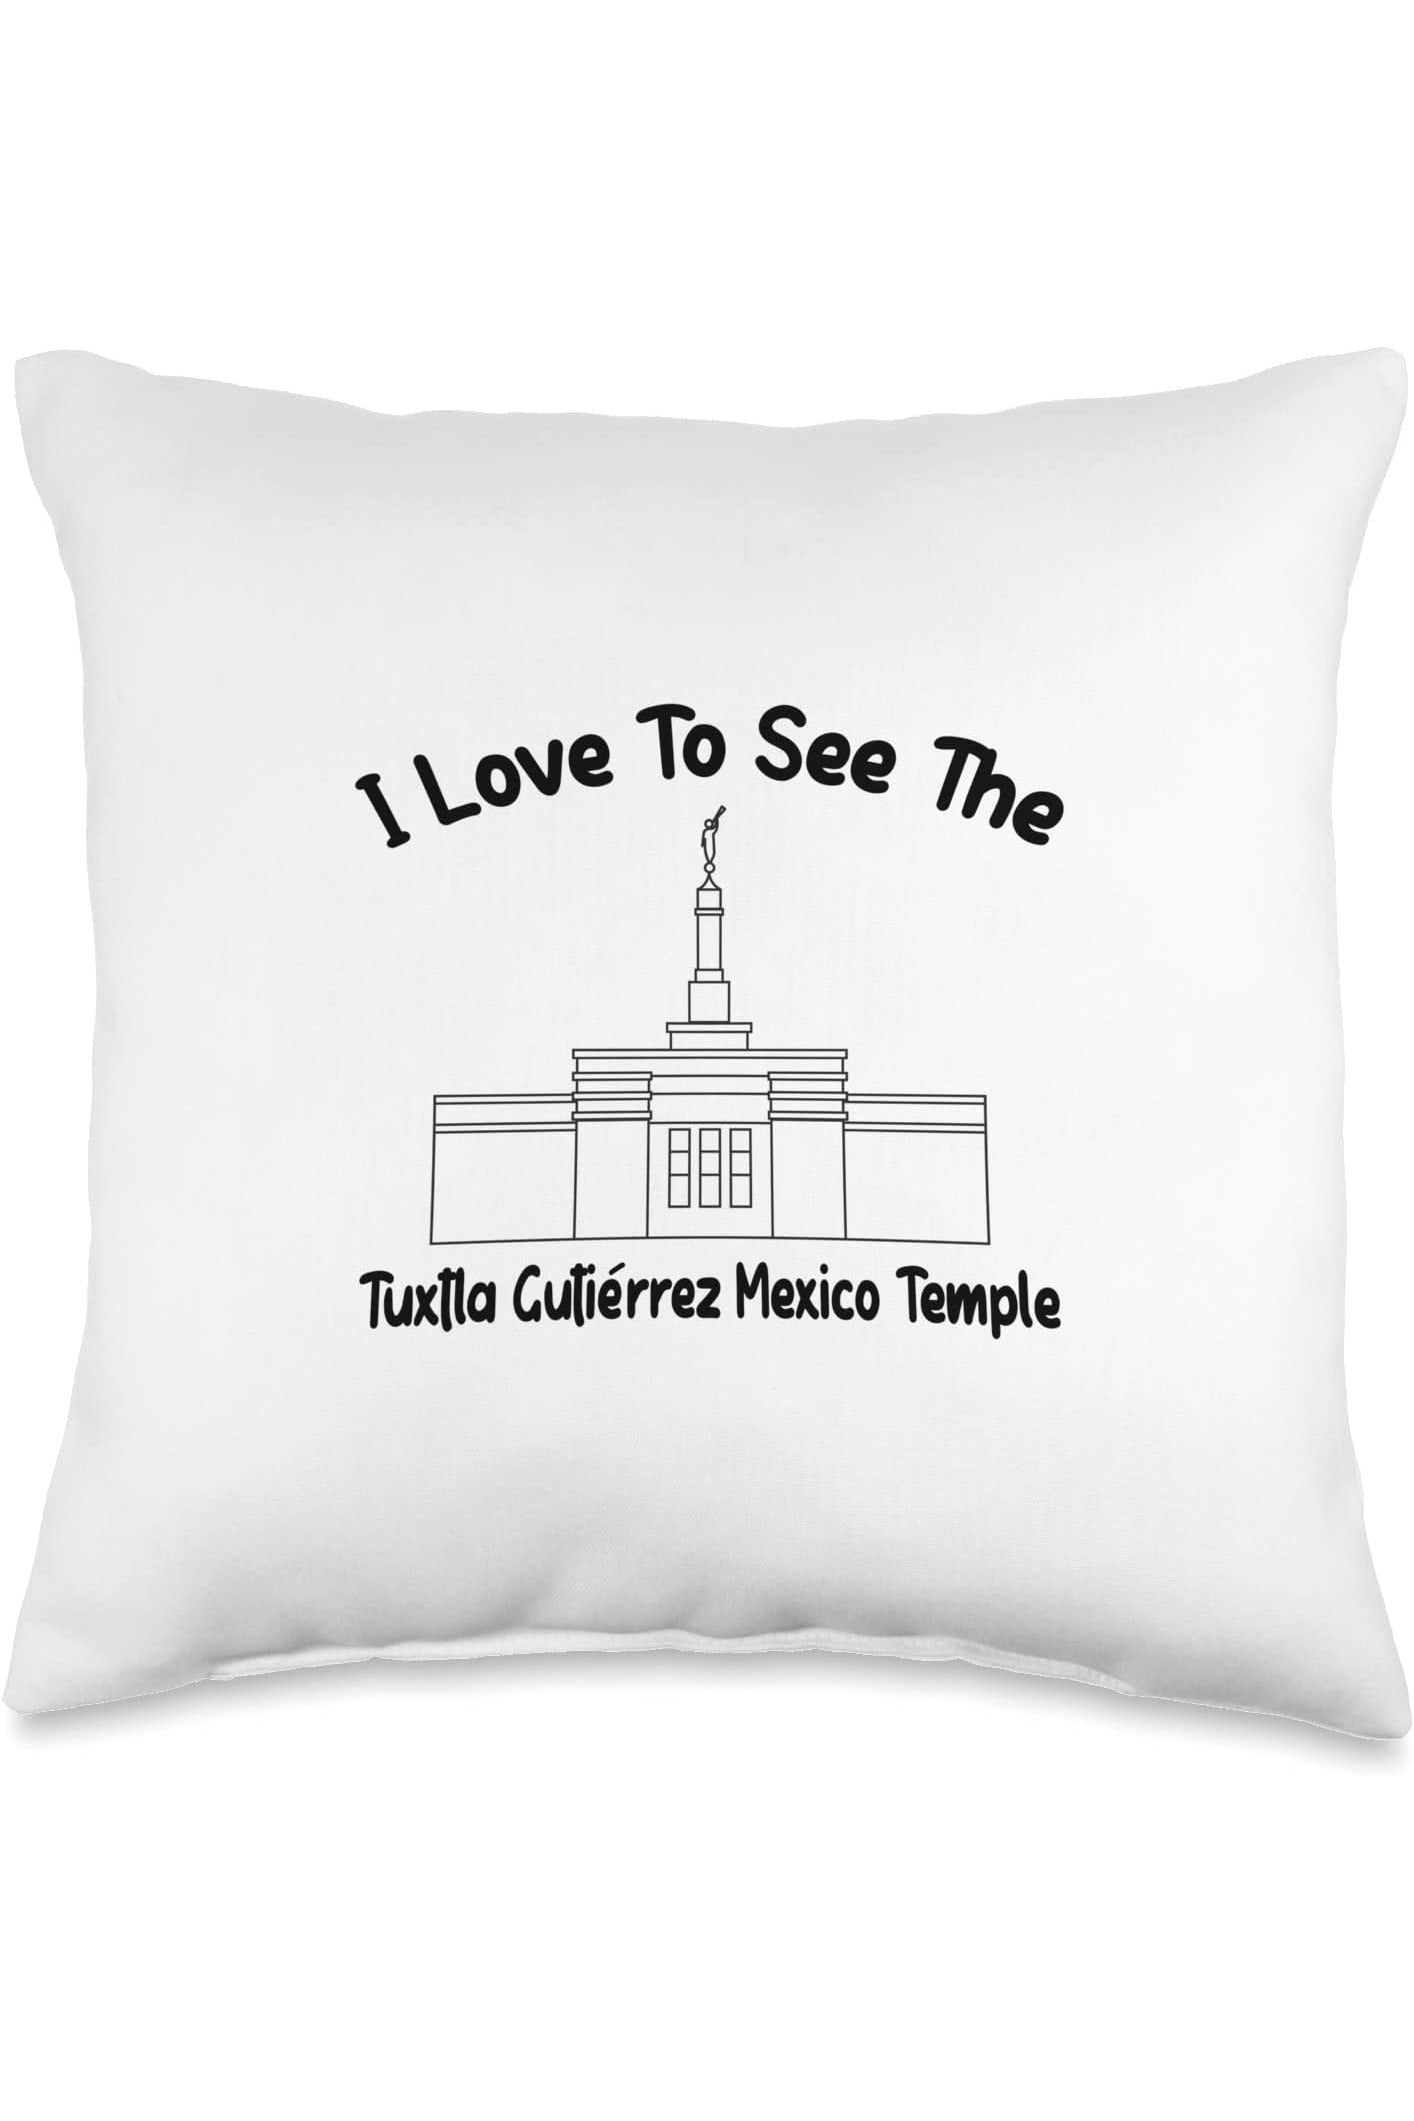 Tuxtla Gutierrez Mexico Temple Throw Pillows - Primary Style (English) US